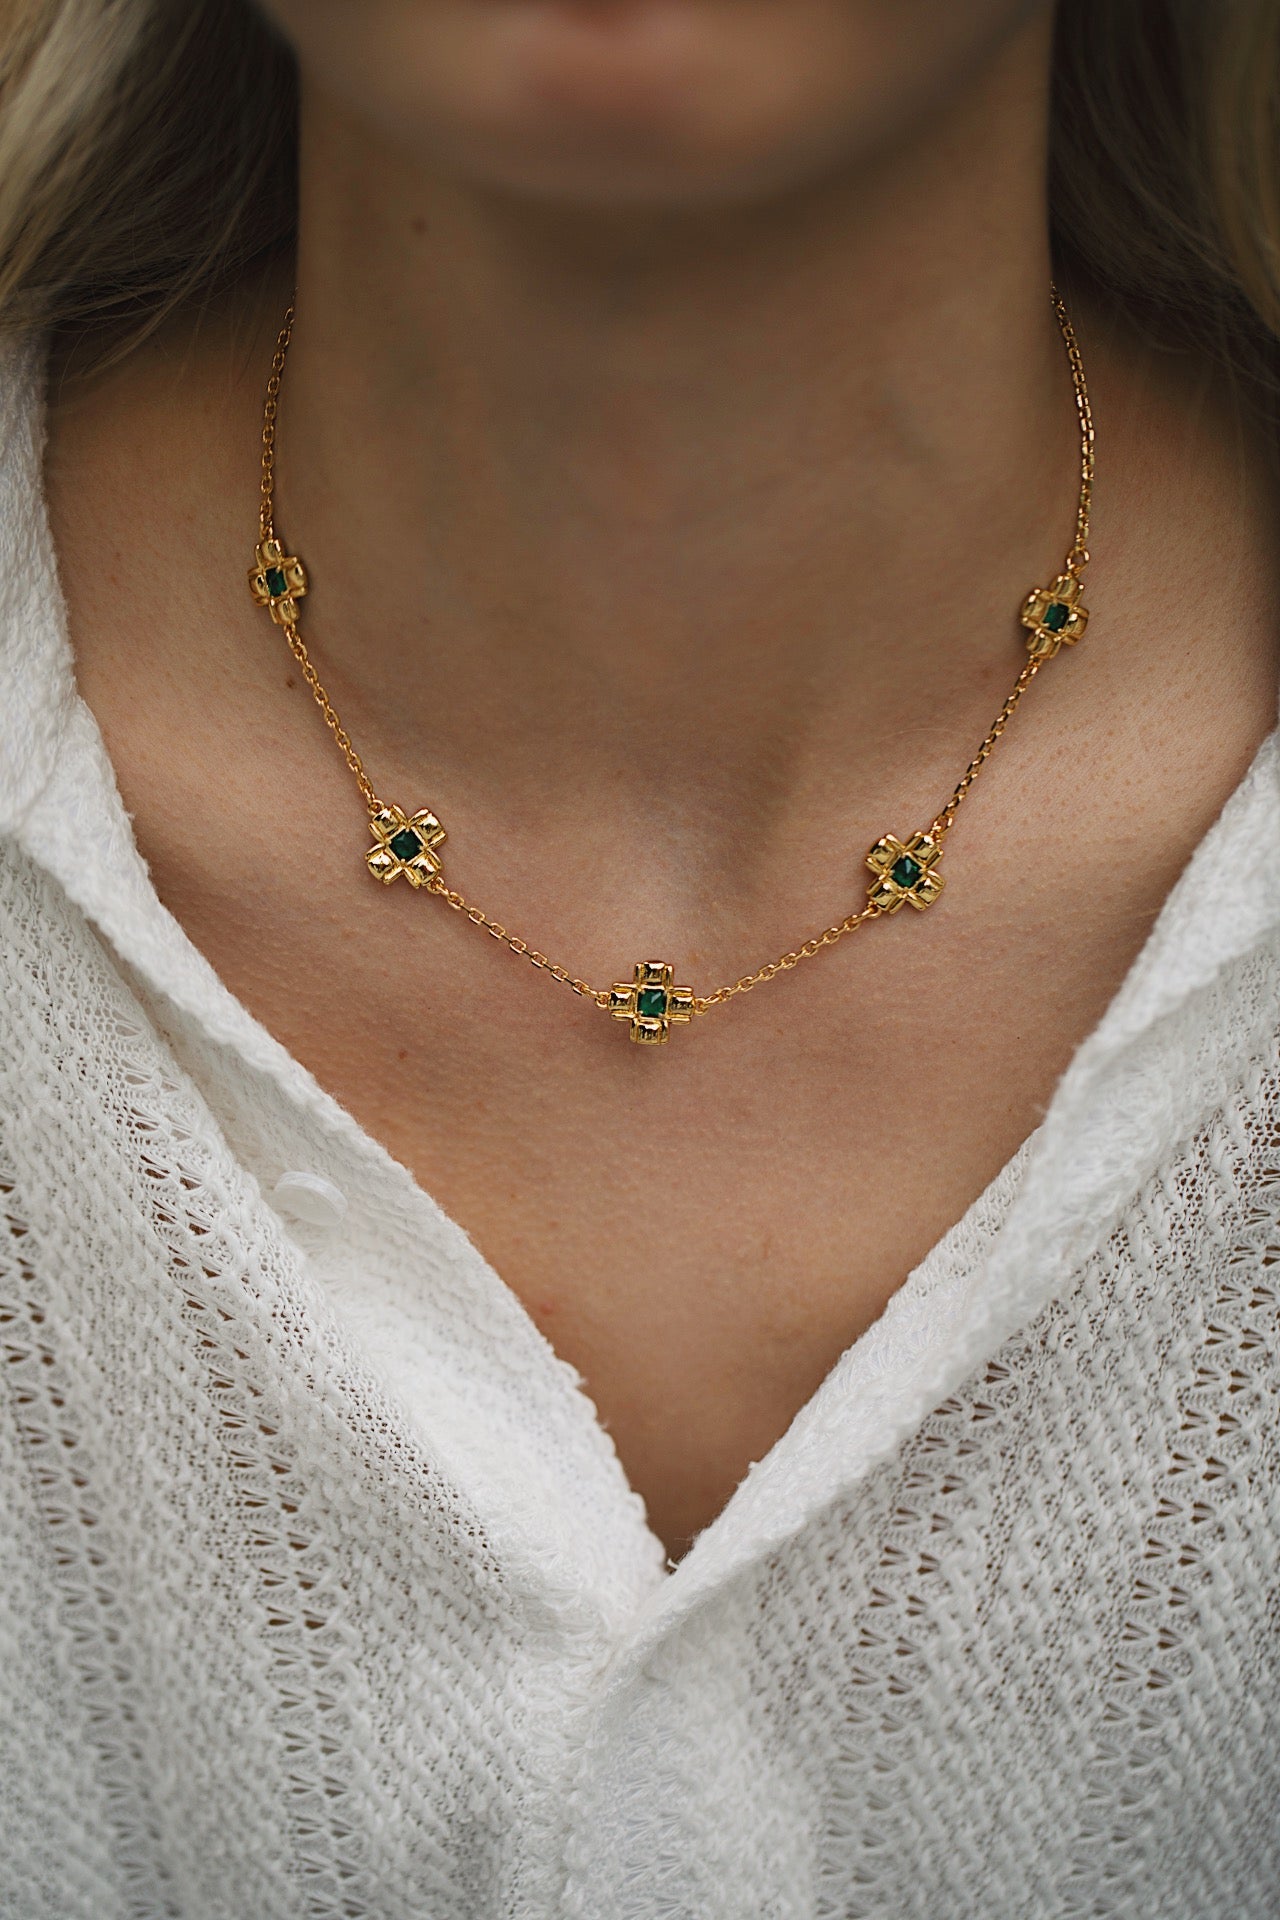 100% Authentic Louis Vuitton Love letters necklace pendant LV flower